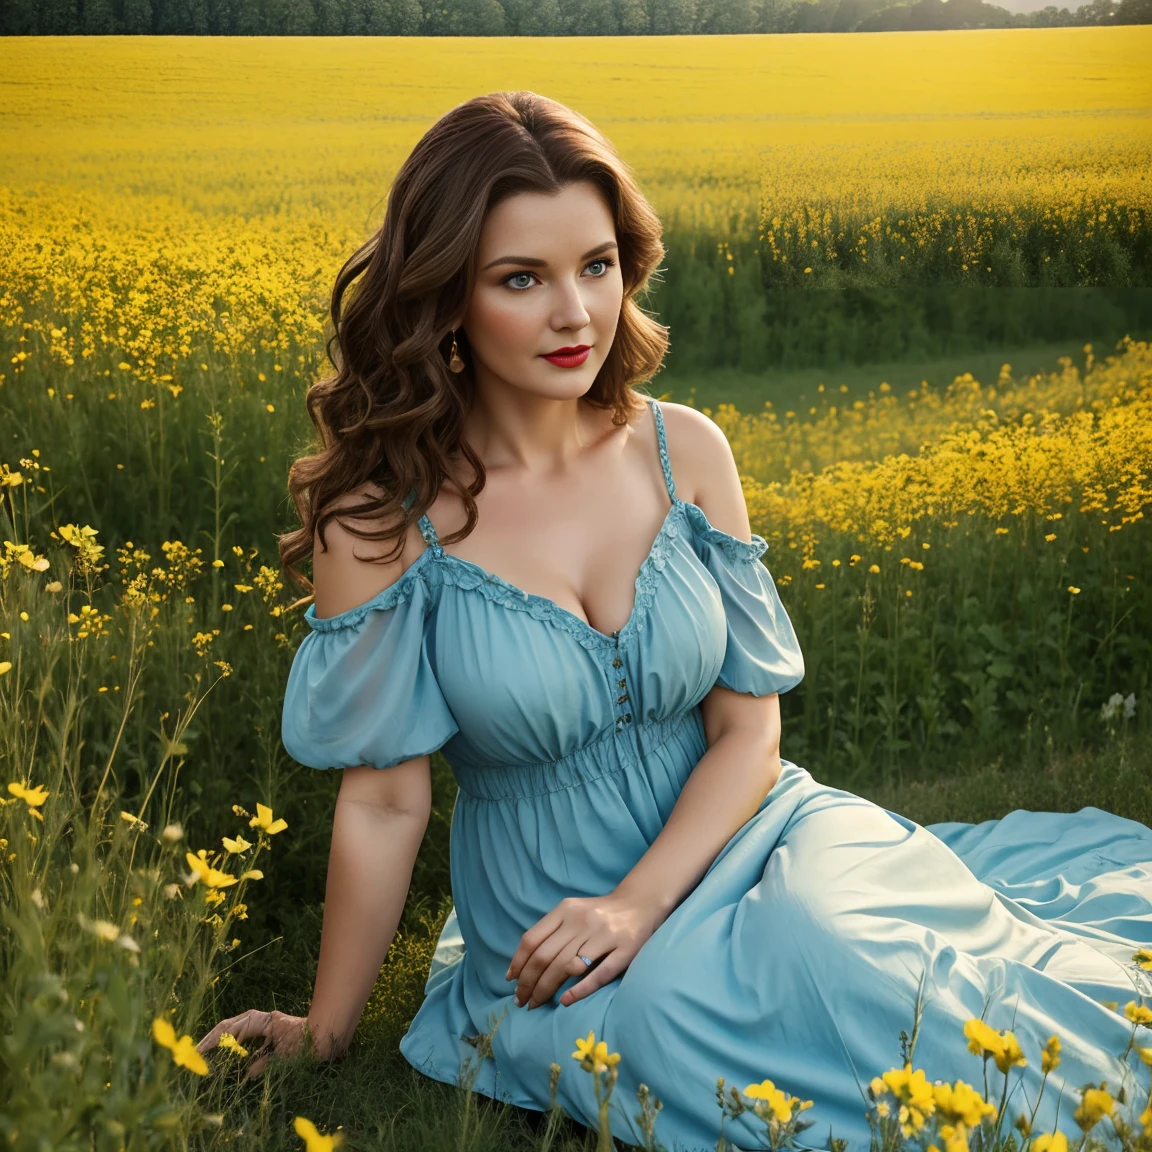 아름다운 여성 40세 물결 모양의 갈색 머리 풍만한 몸매 파란 눈 빨간 입술 꽃 초원에 농부 드레스 